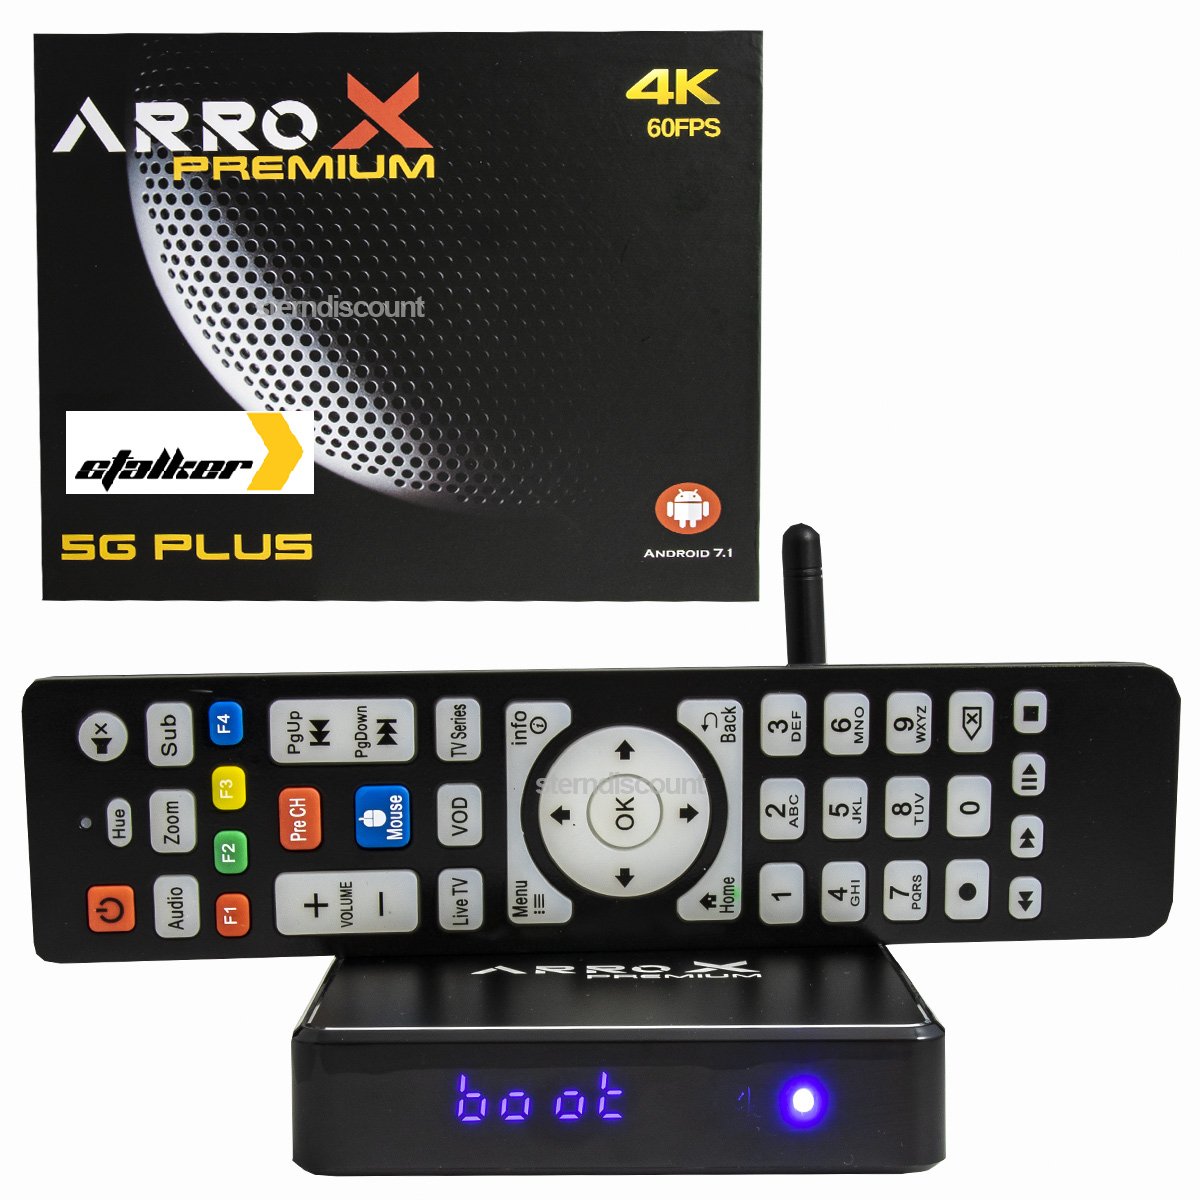 Arrox Premium 4k